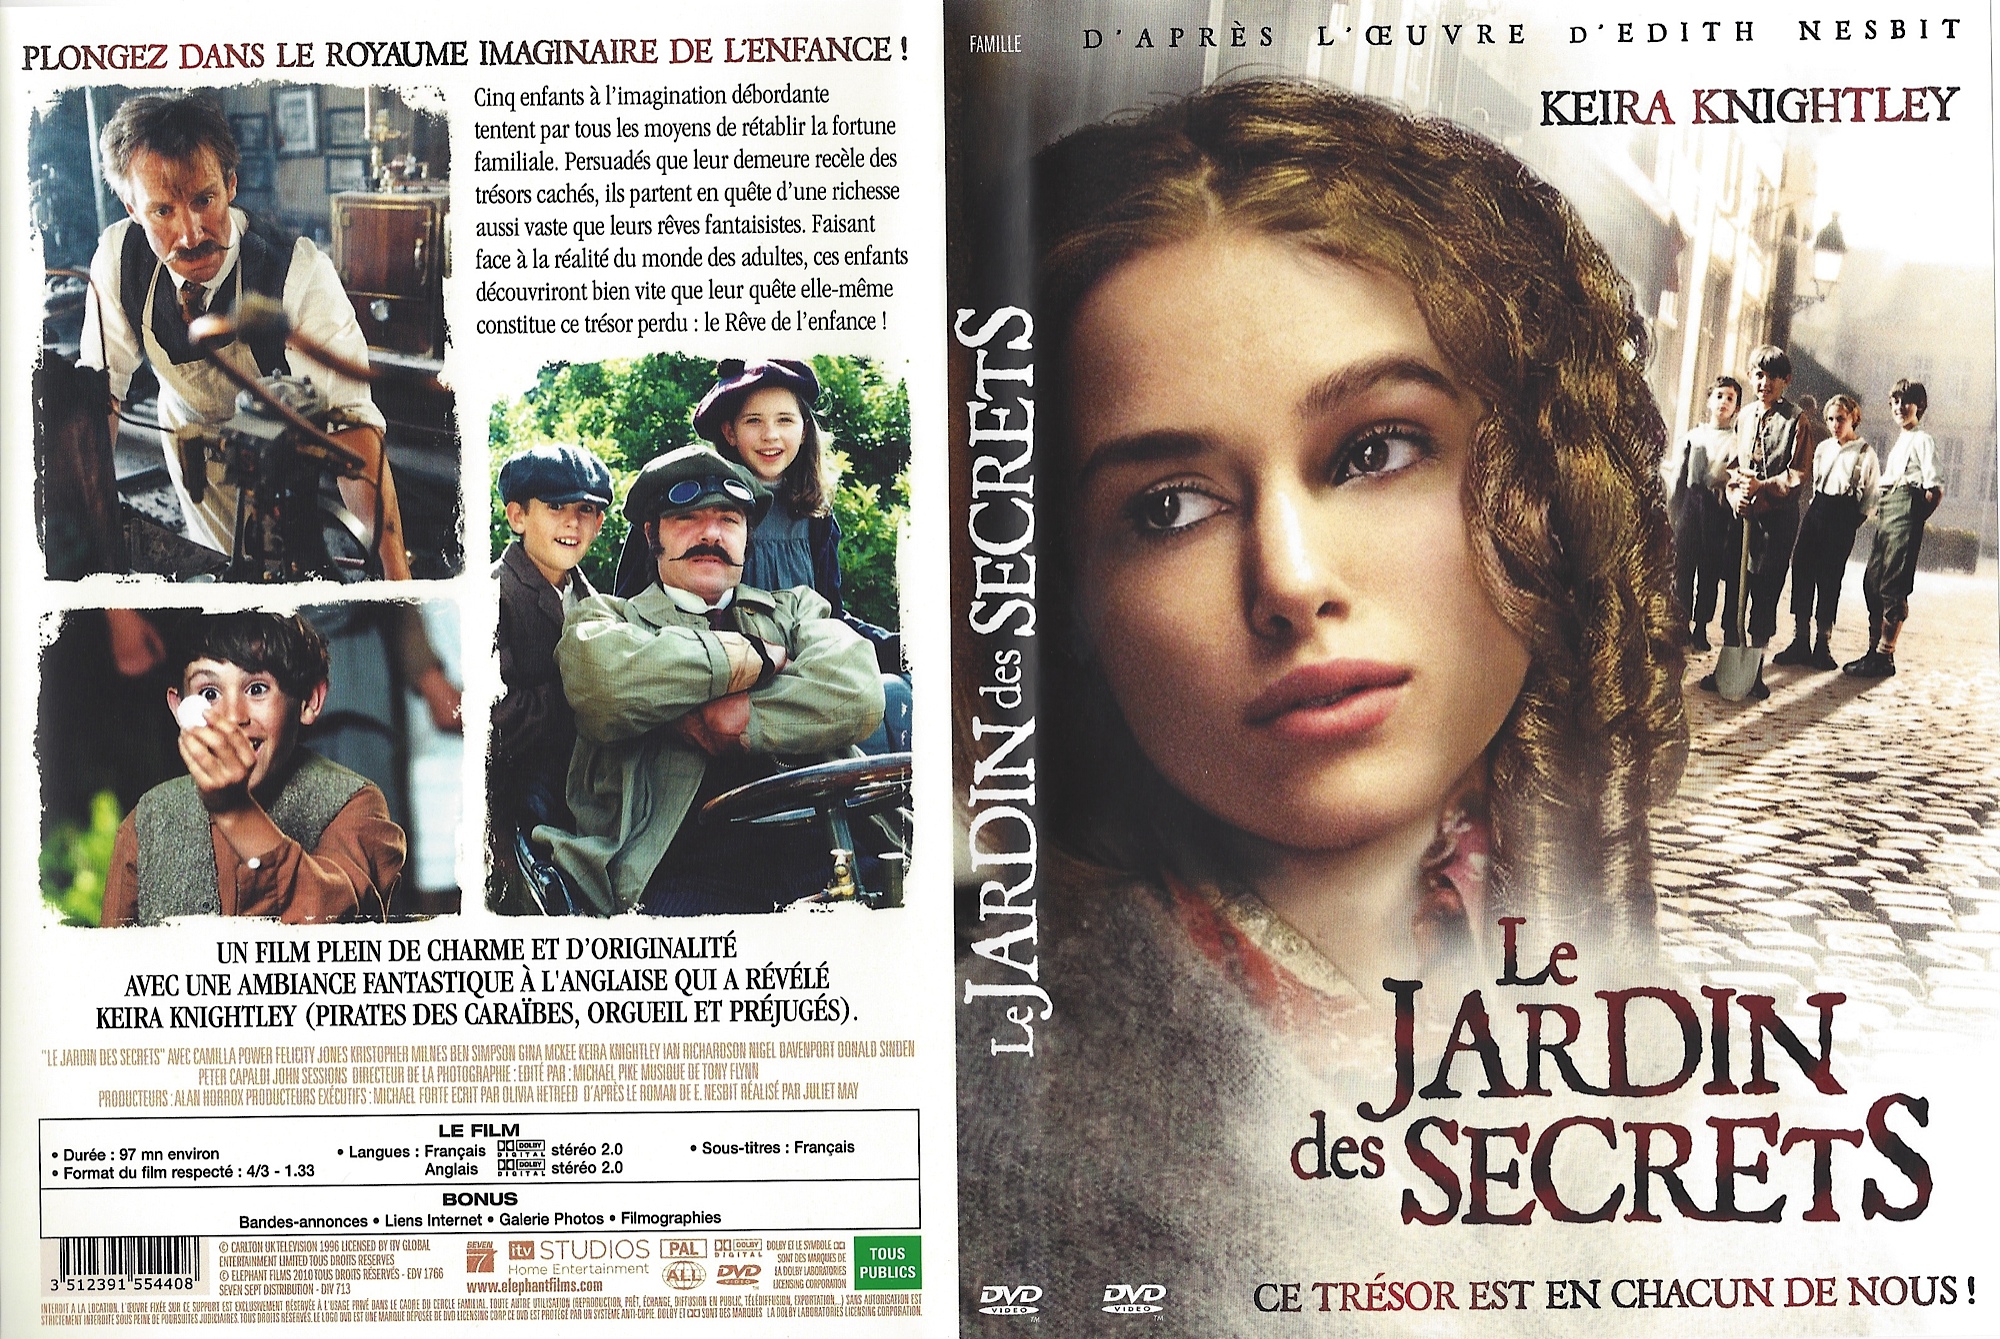 Jaquette DVD Le Jardin des Secrets